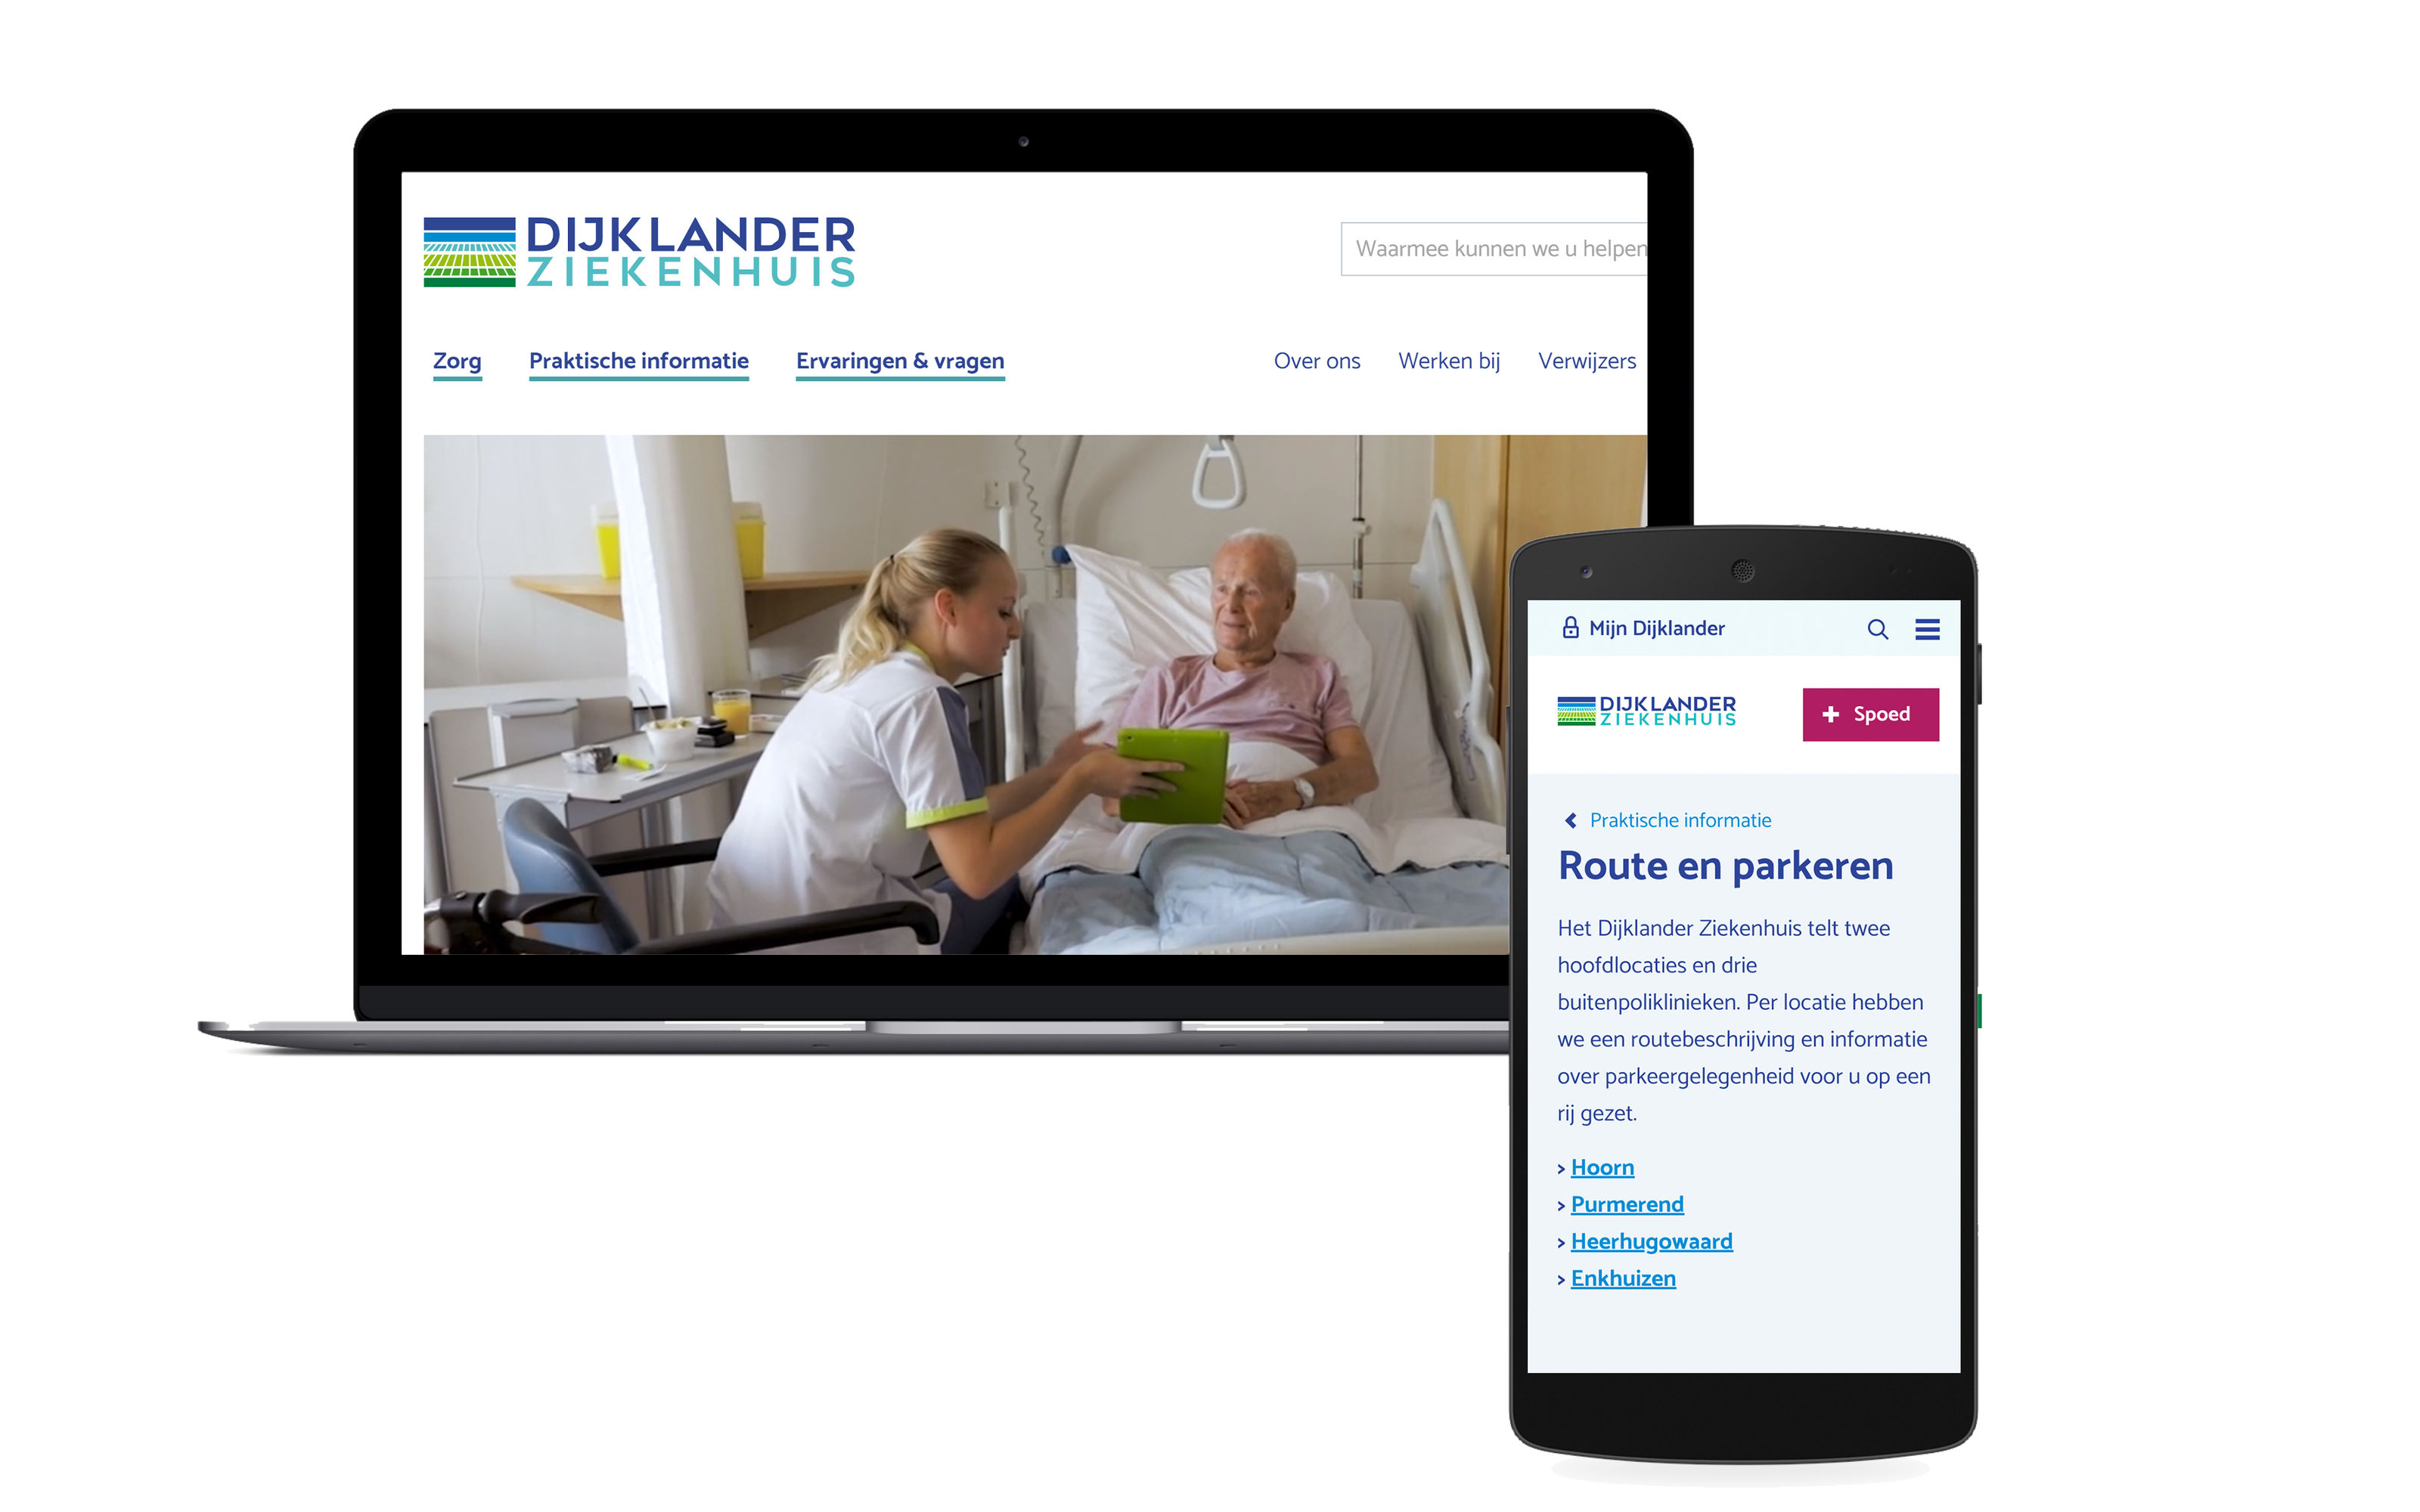 Een afbeelding van de Dijklander website op een laptop en een mobiele telefoon.